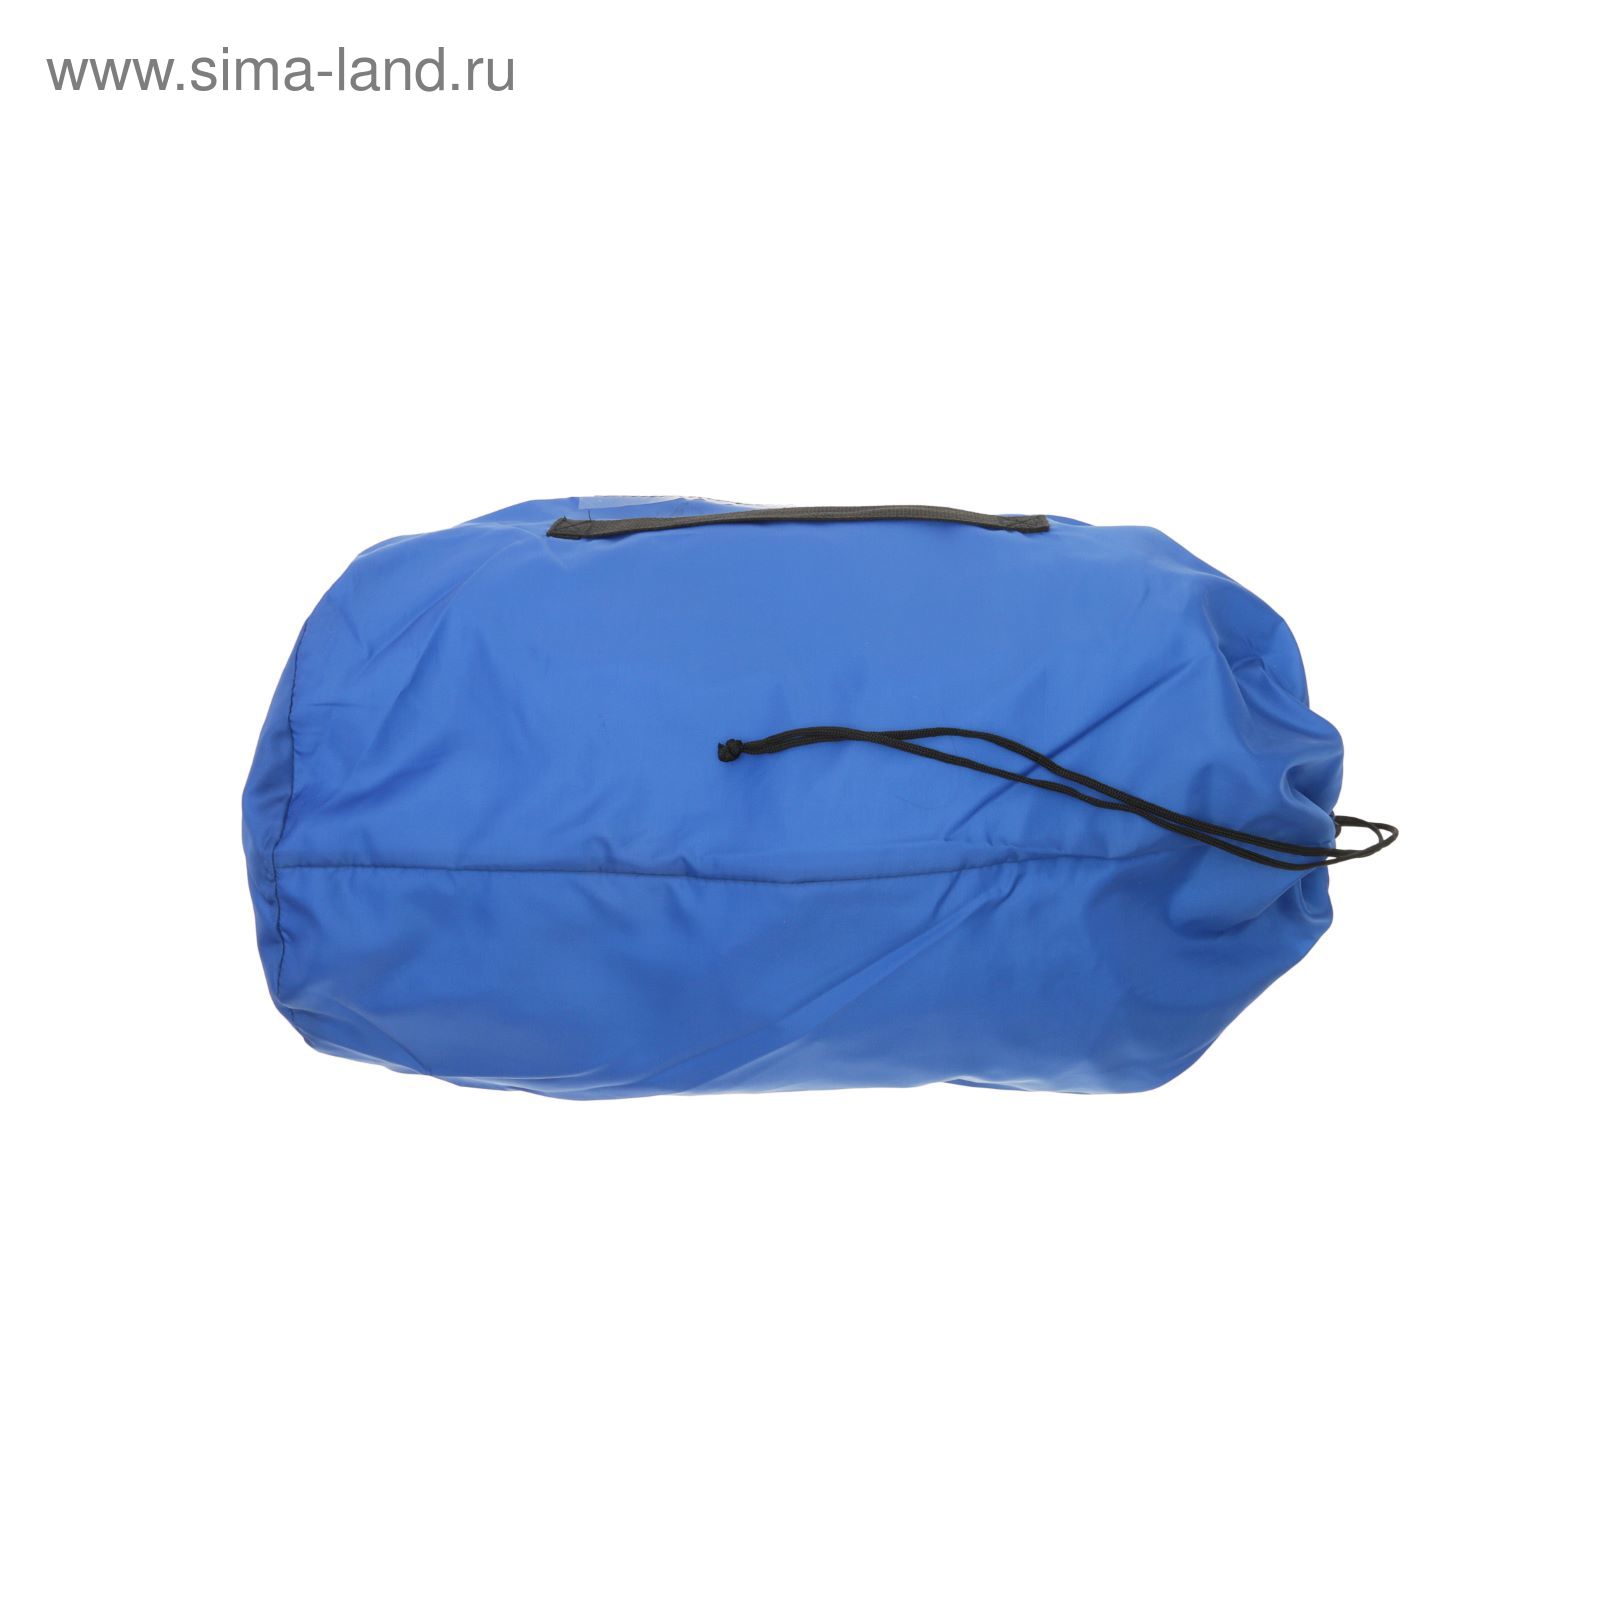 Спальный мешок "Комфорт" 3-х слойный, с капюшоном, увеличенный, цвет МИКС